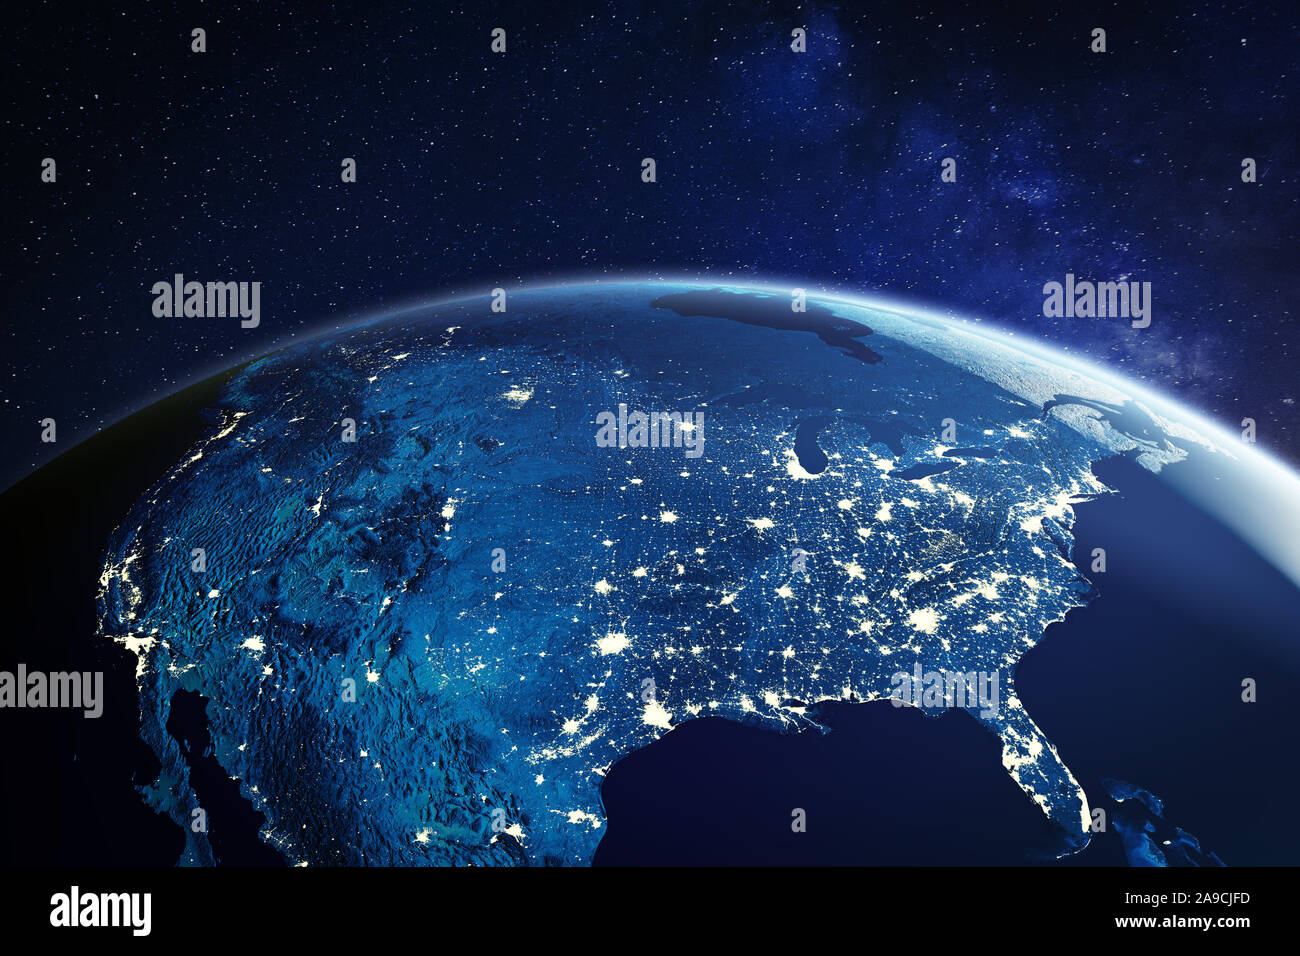 USA à partir de l'espace de nuit avec les lumières de la ville, montrant des villes américaines aux États-Unis, d'ensemble de l'Amérique du Nord, rendu 3D de la planète Terre, ele Banque D'Images